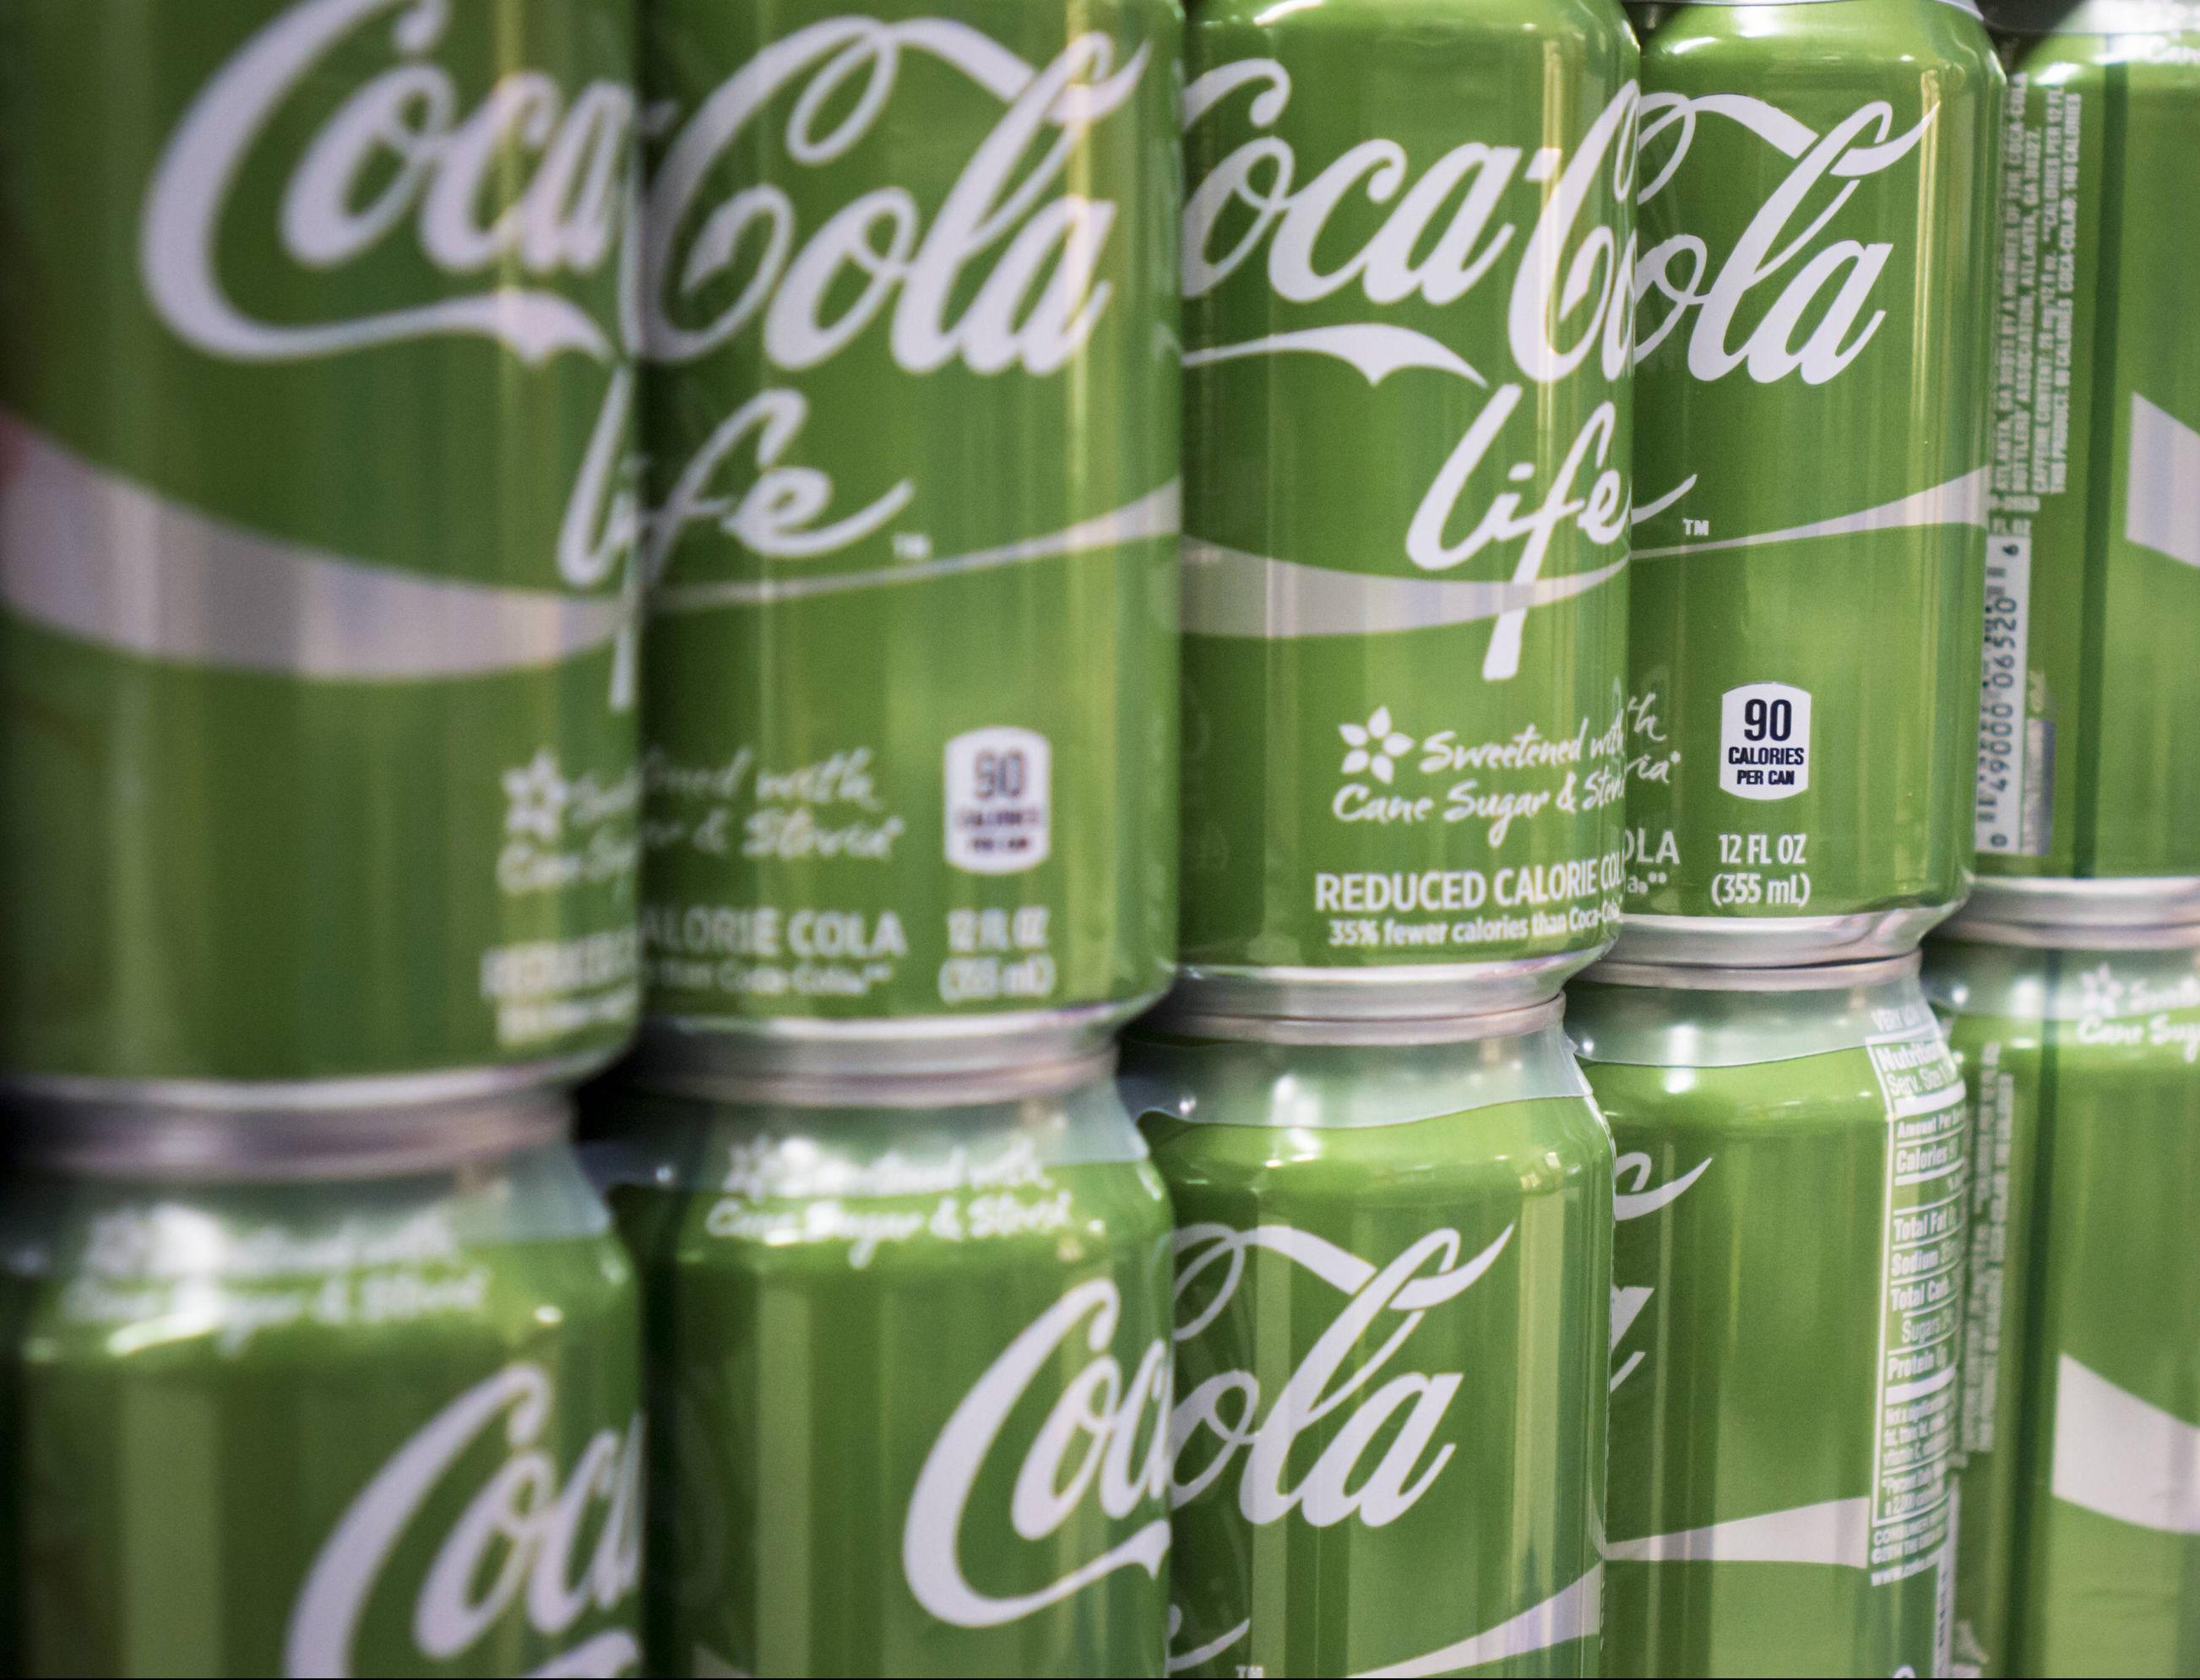 100 000 евро получит автор новой экологичной упаковки Coca-Cola